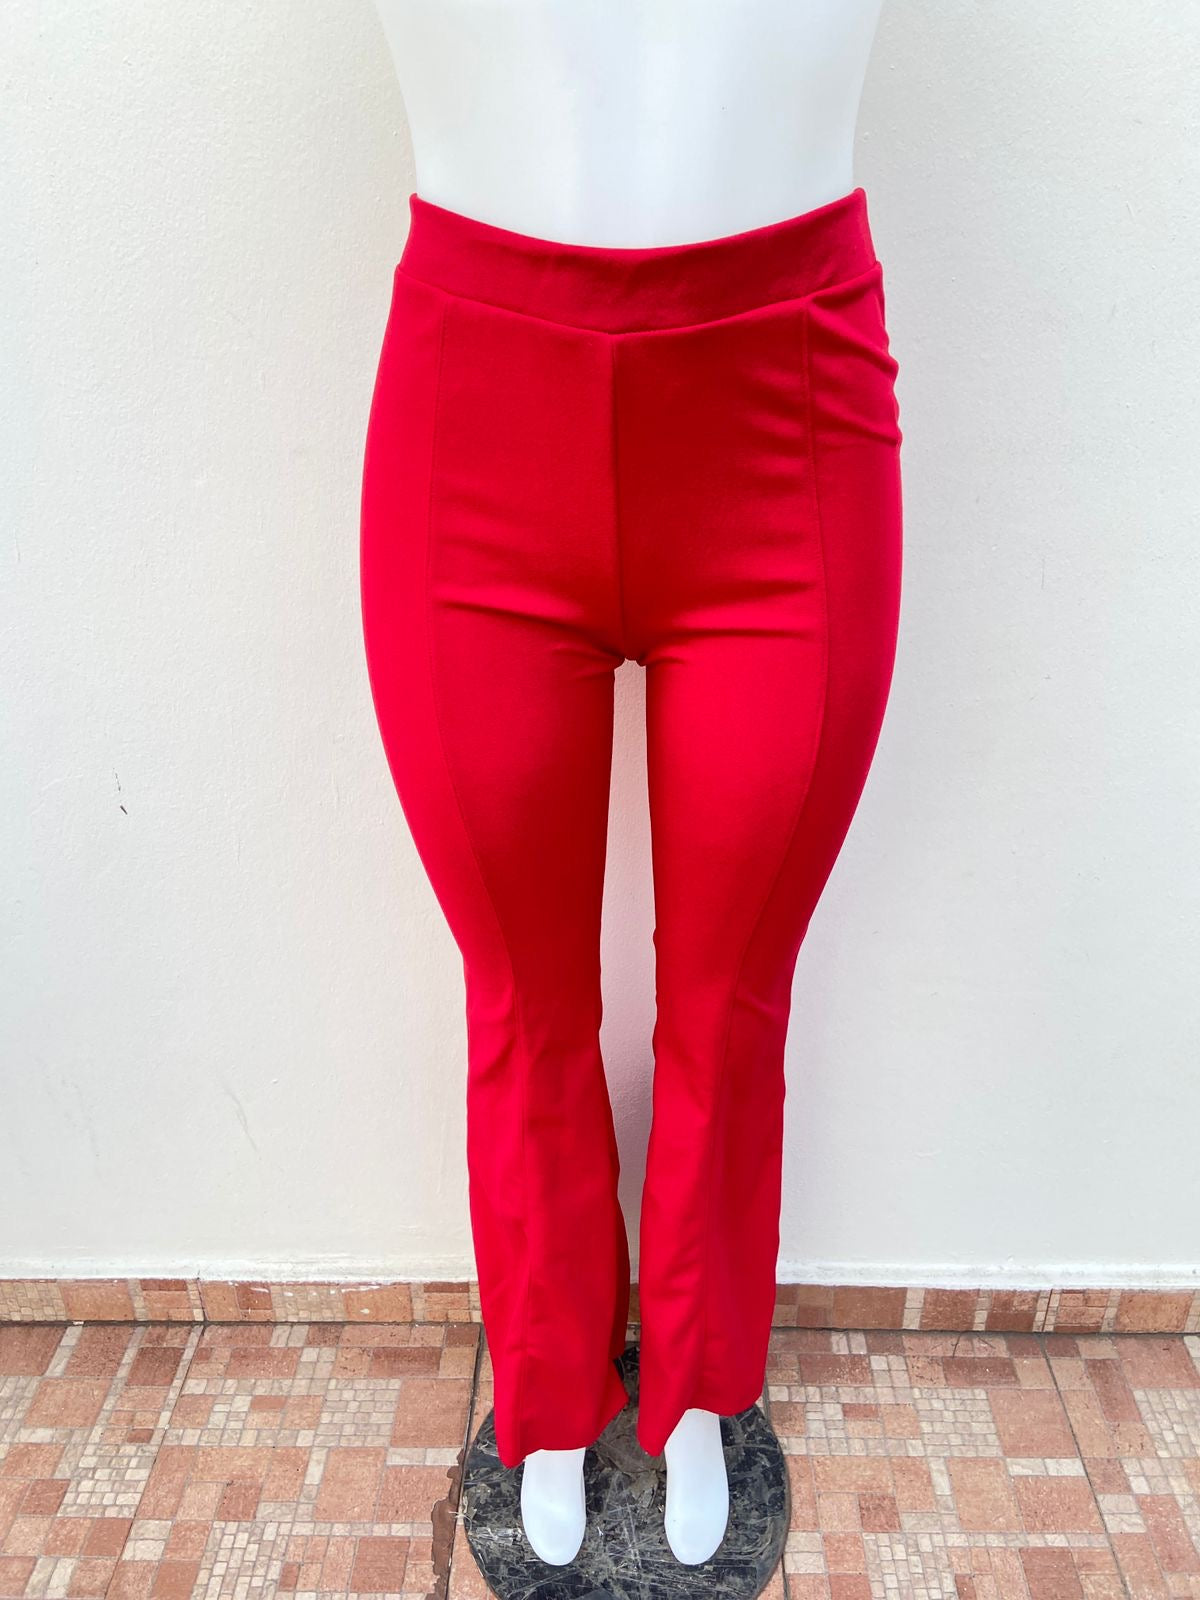 Pantalon Fashion Nova Original, en color rojo con tachones y campana .